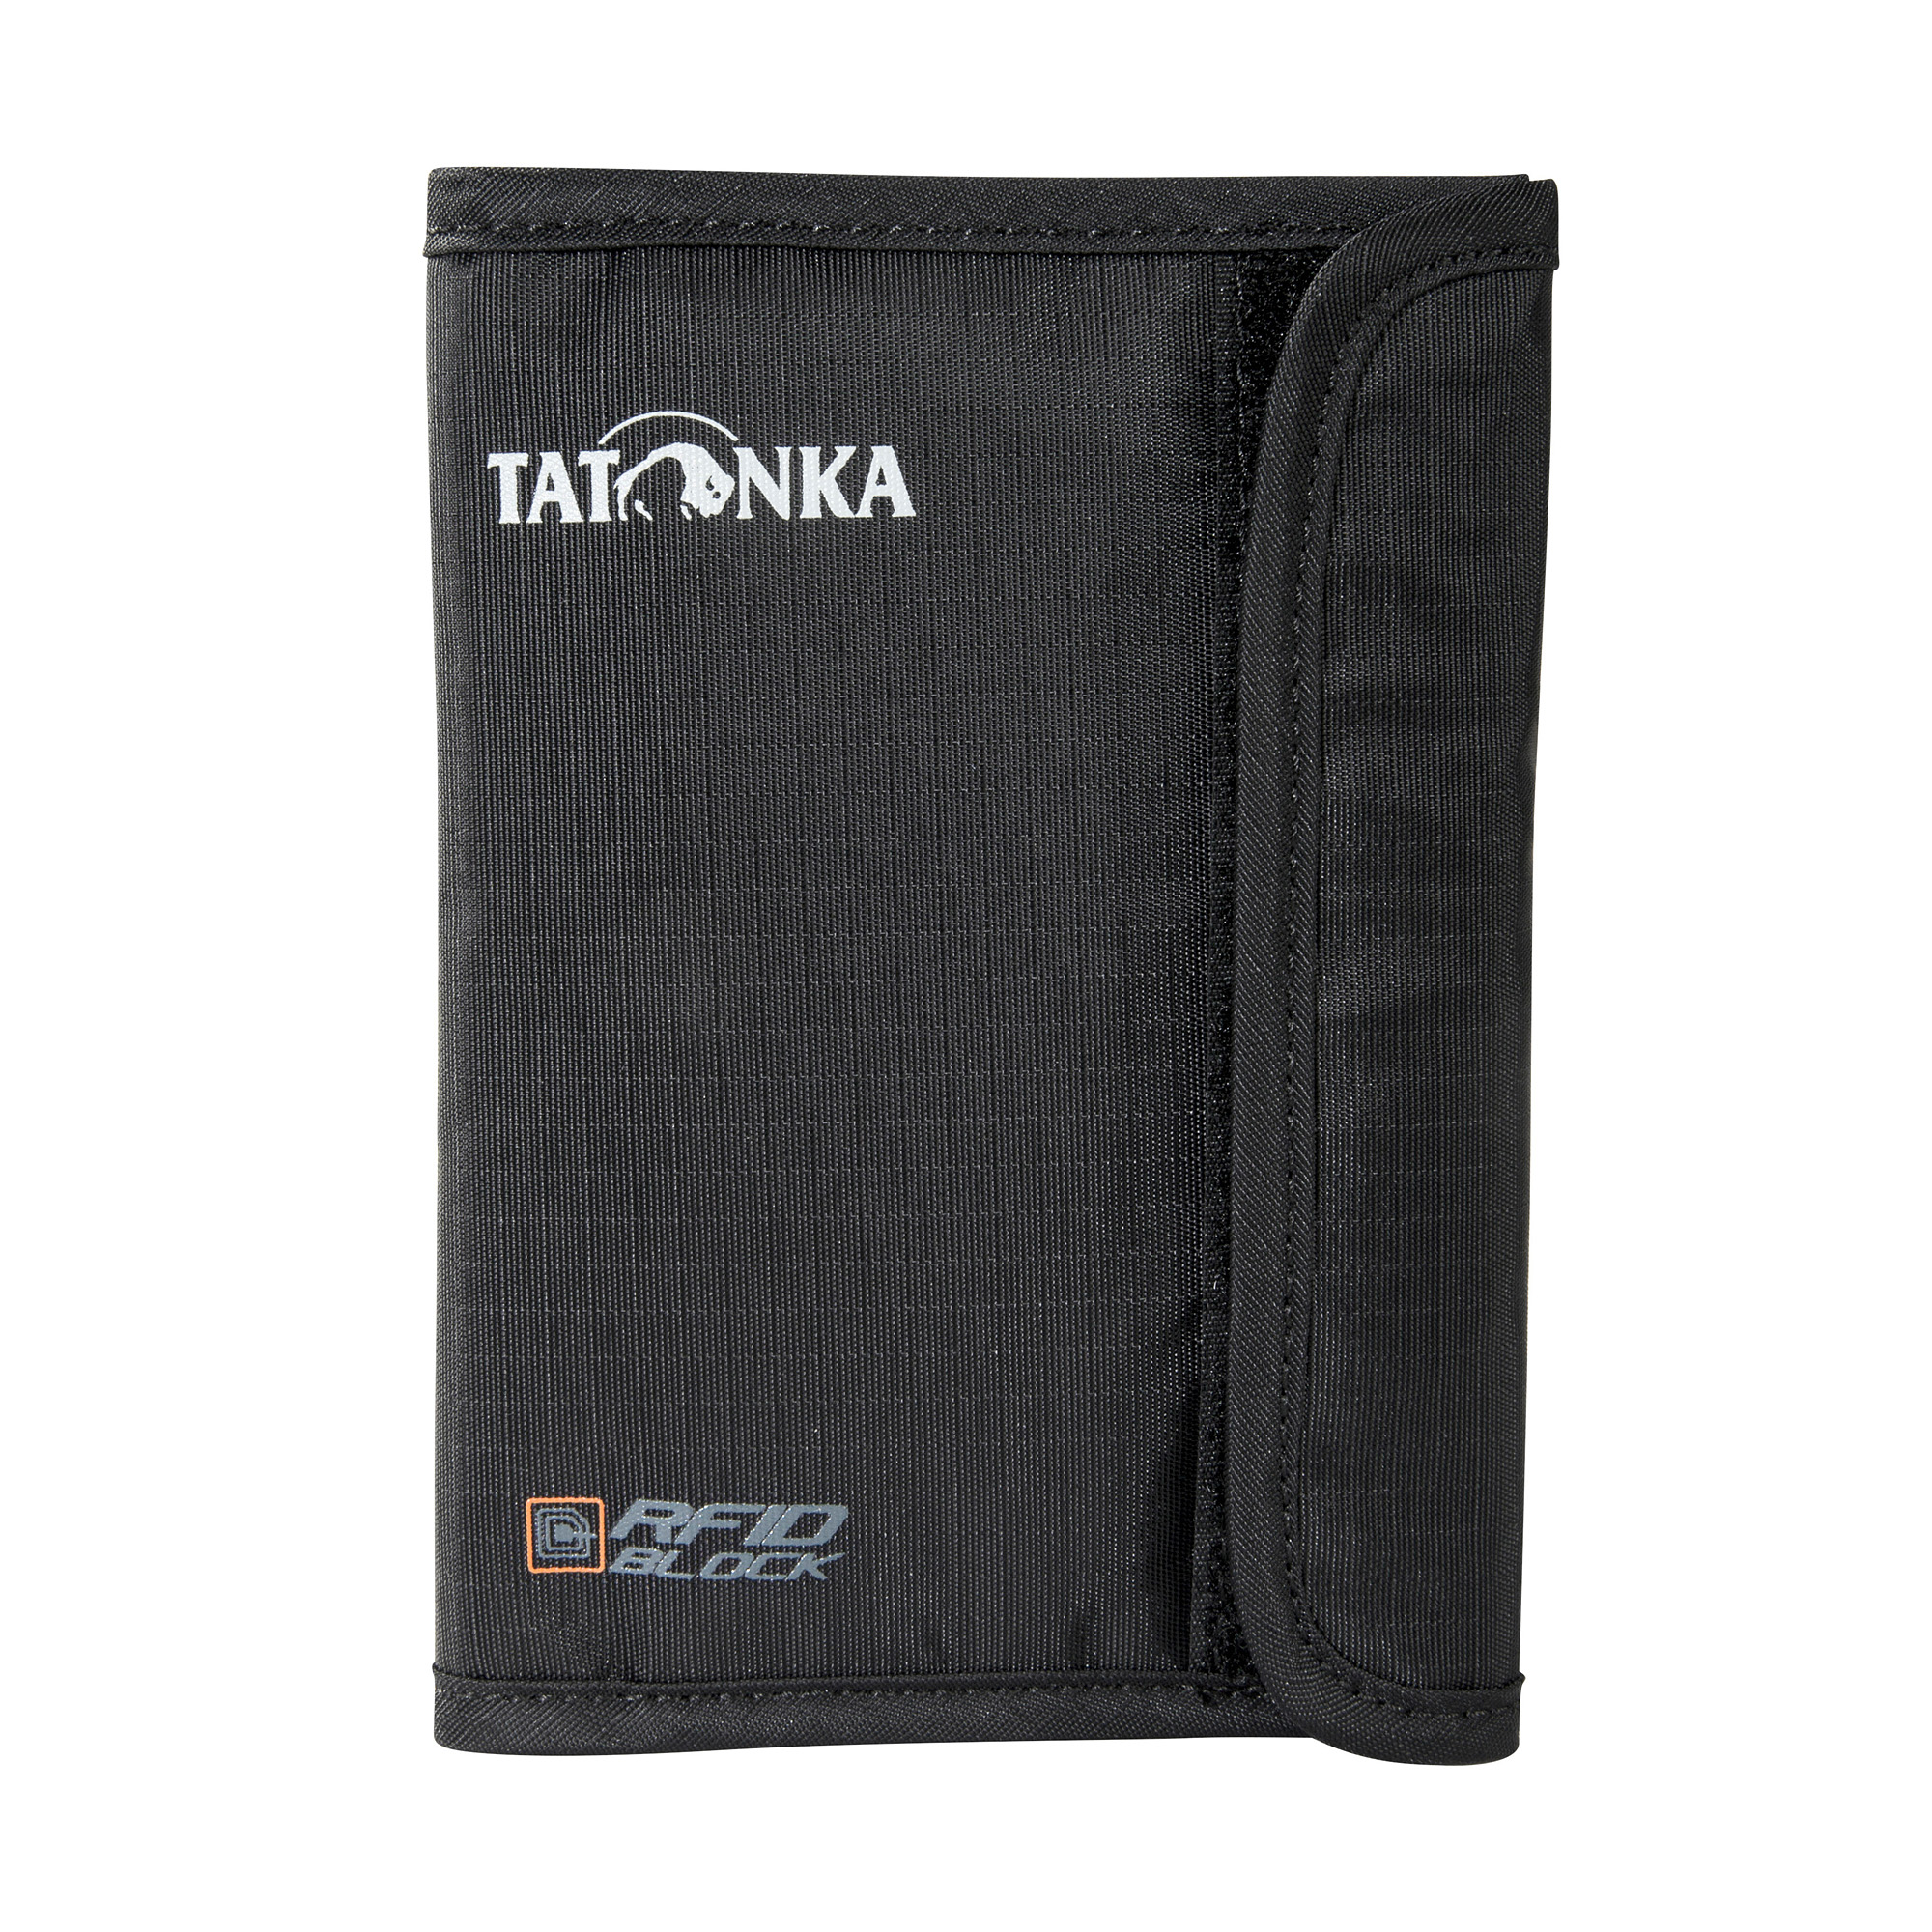 Zubehor, Tasche, Handtasche, Tatonka Passport Safe RFID B black schwarz Sonstige Taschen 4013236255386